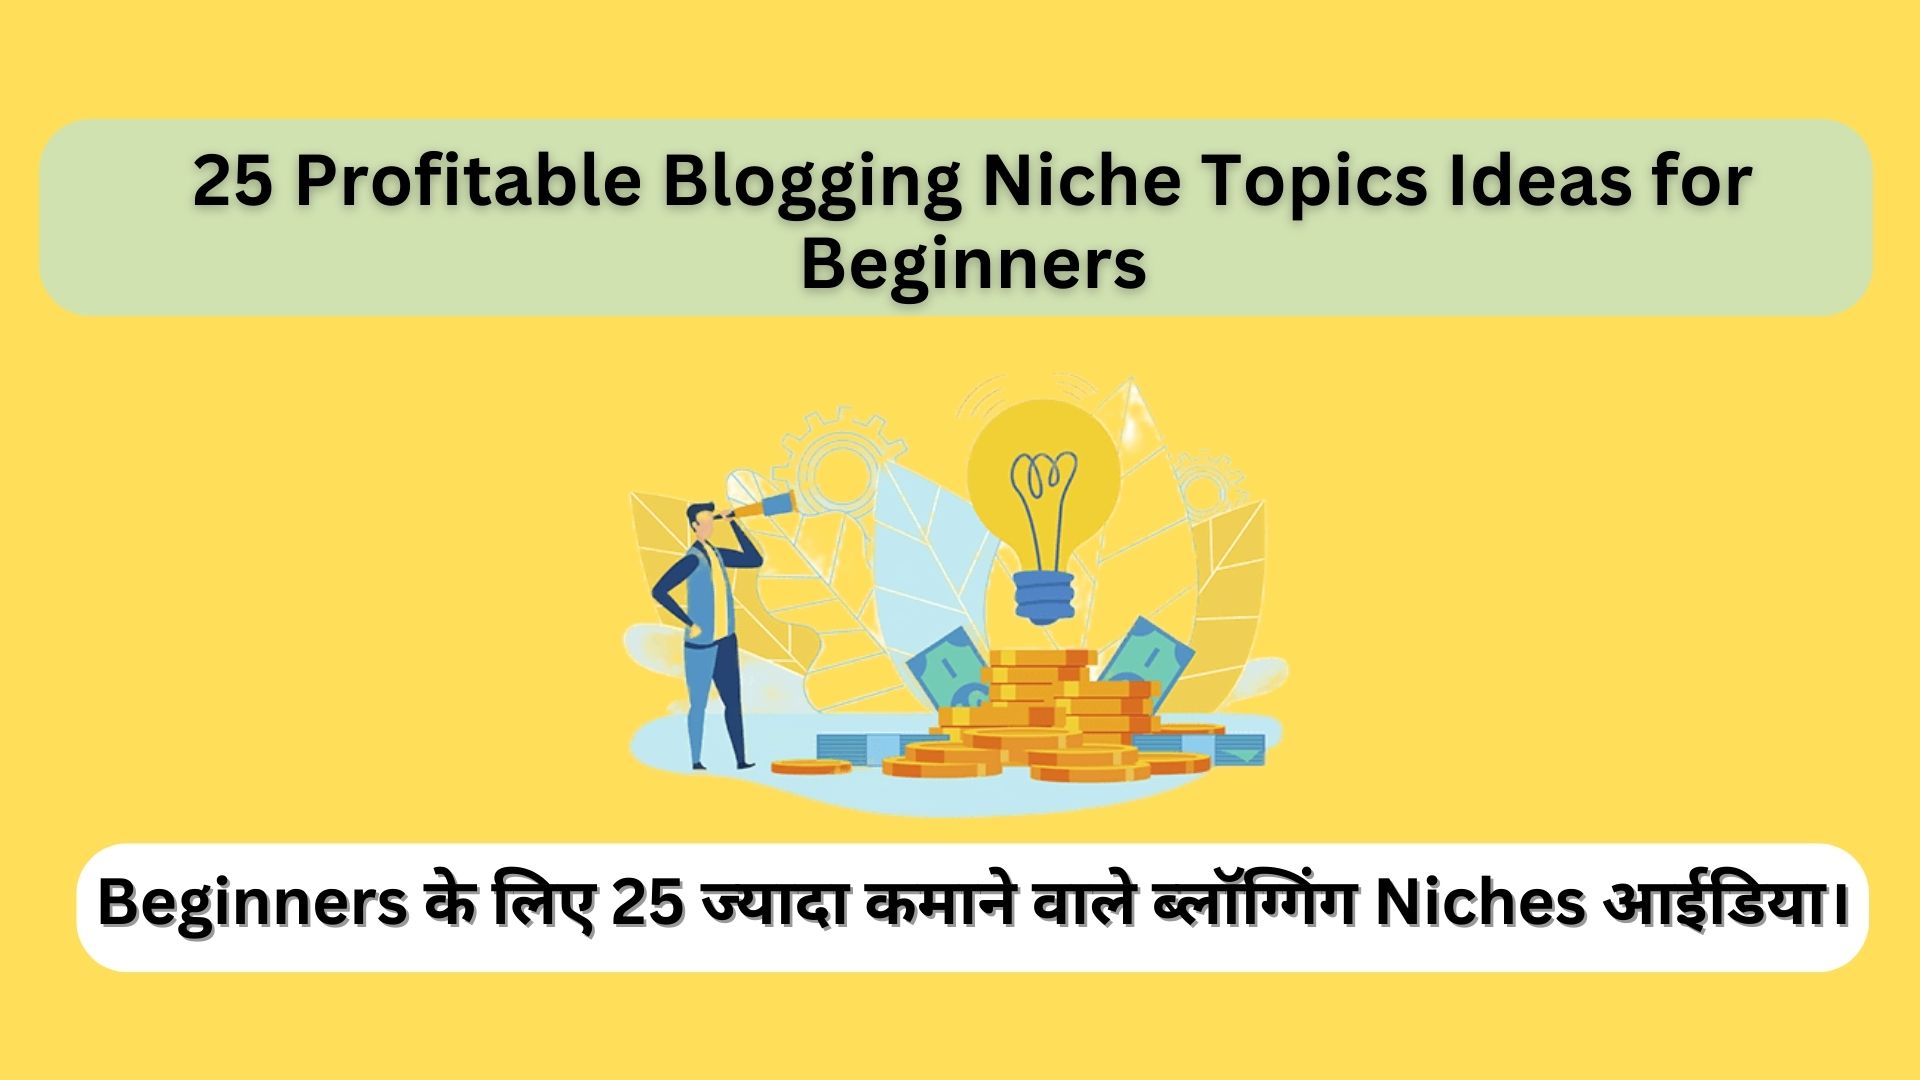 25 Profitable Blogging Niche Topics Ideas for Beginners